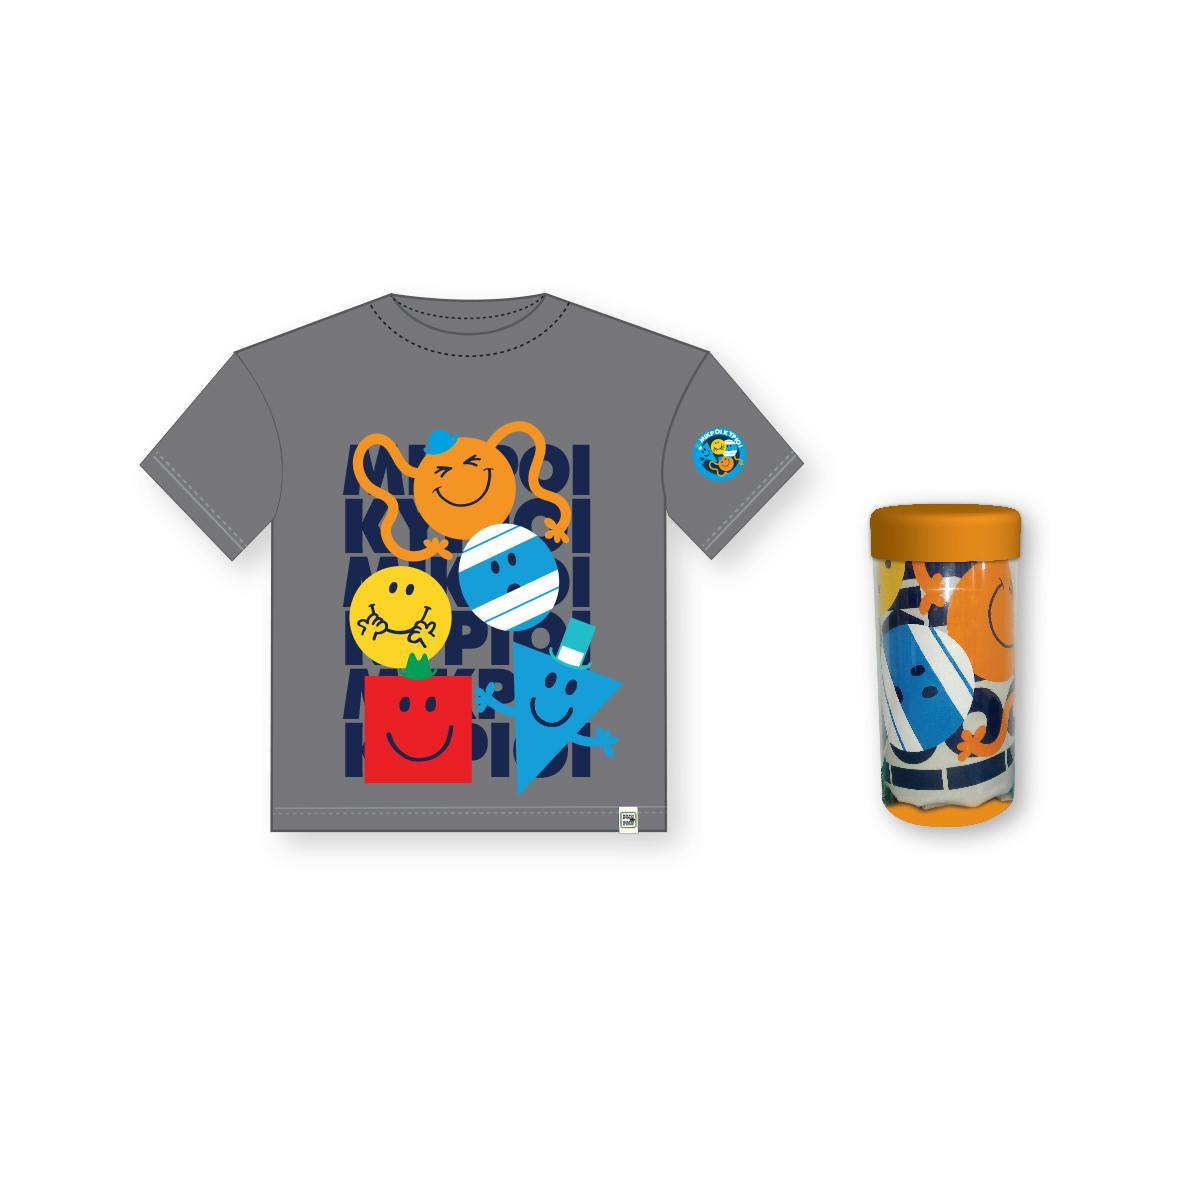 Μικροί Κύριοι - T-Shirt Παιδικό Μπλουζάκι | Συλλογή Μικροί Κύριοι - Μικρές Κυρίες | Χάρτινη Πολη  Ηλικία 3-4 HP.TST.0011